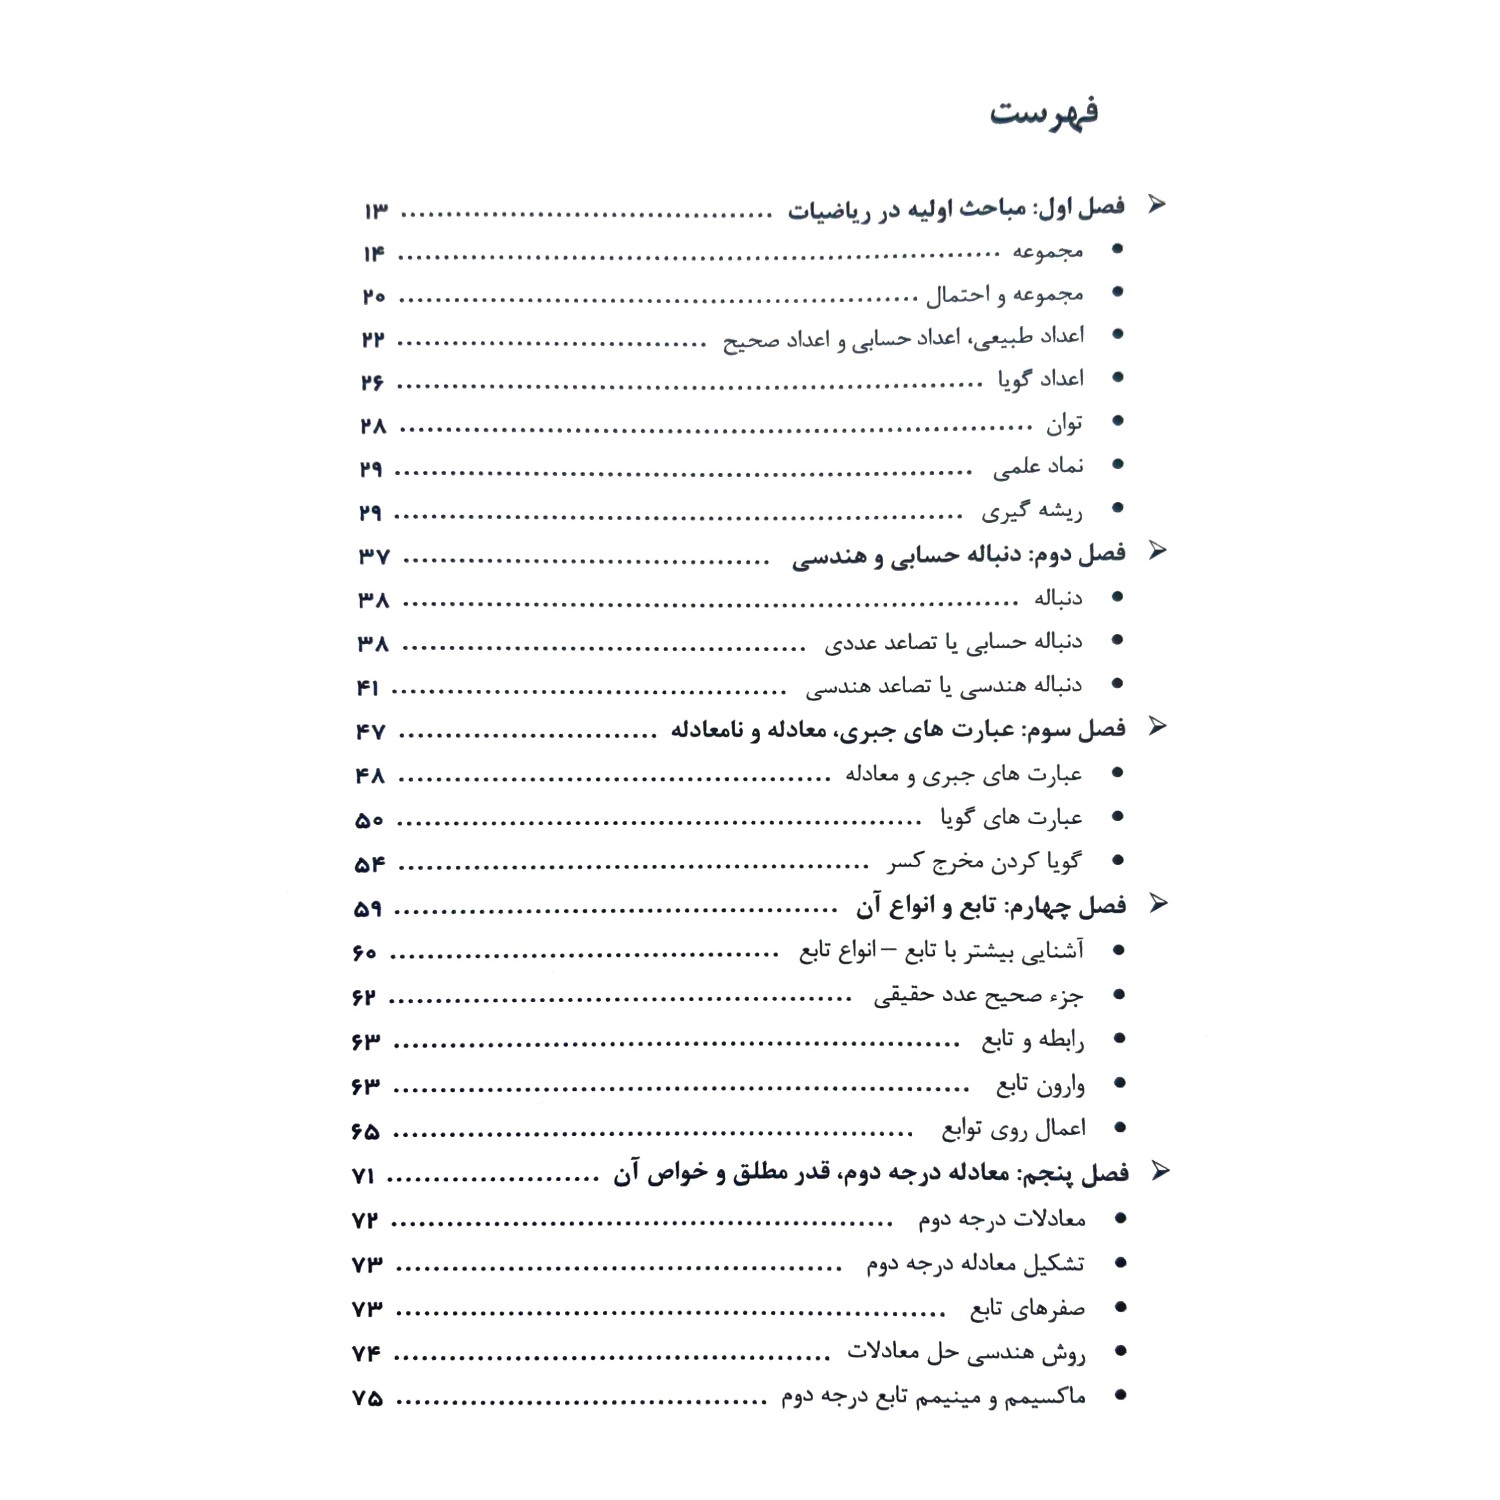 کتاب ریاضی و آمار مقدماتی ایران استخدام